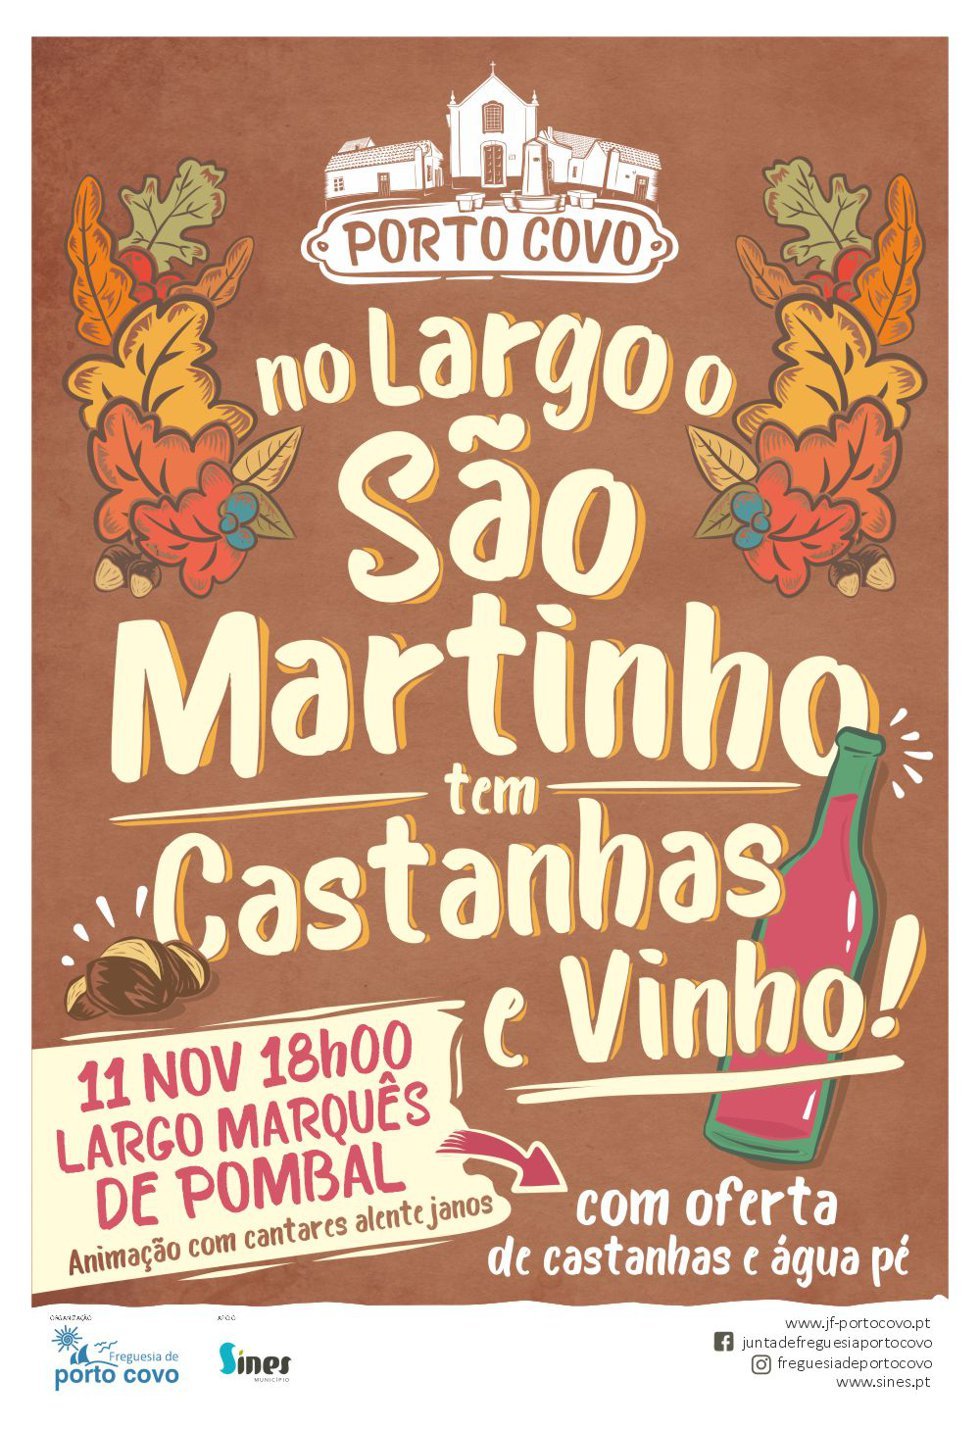 No Largo, o São Martinho tem castanhas e vinho